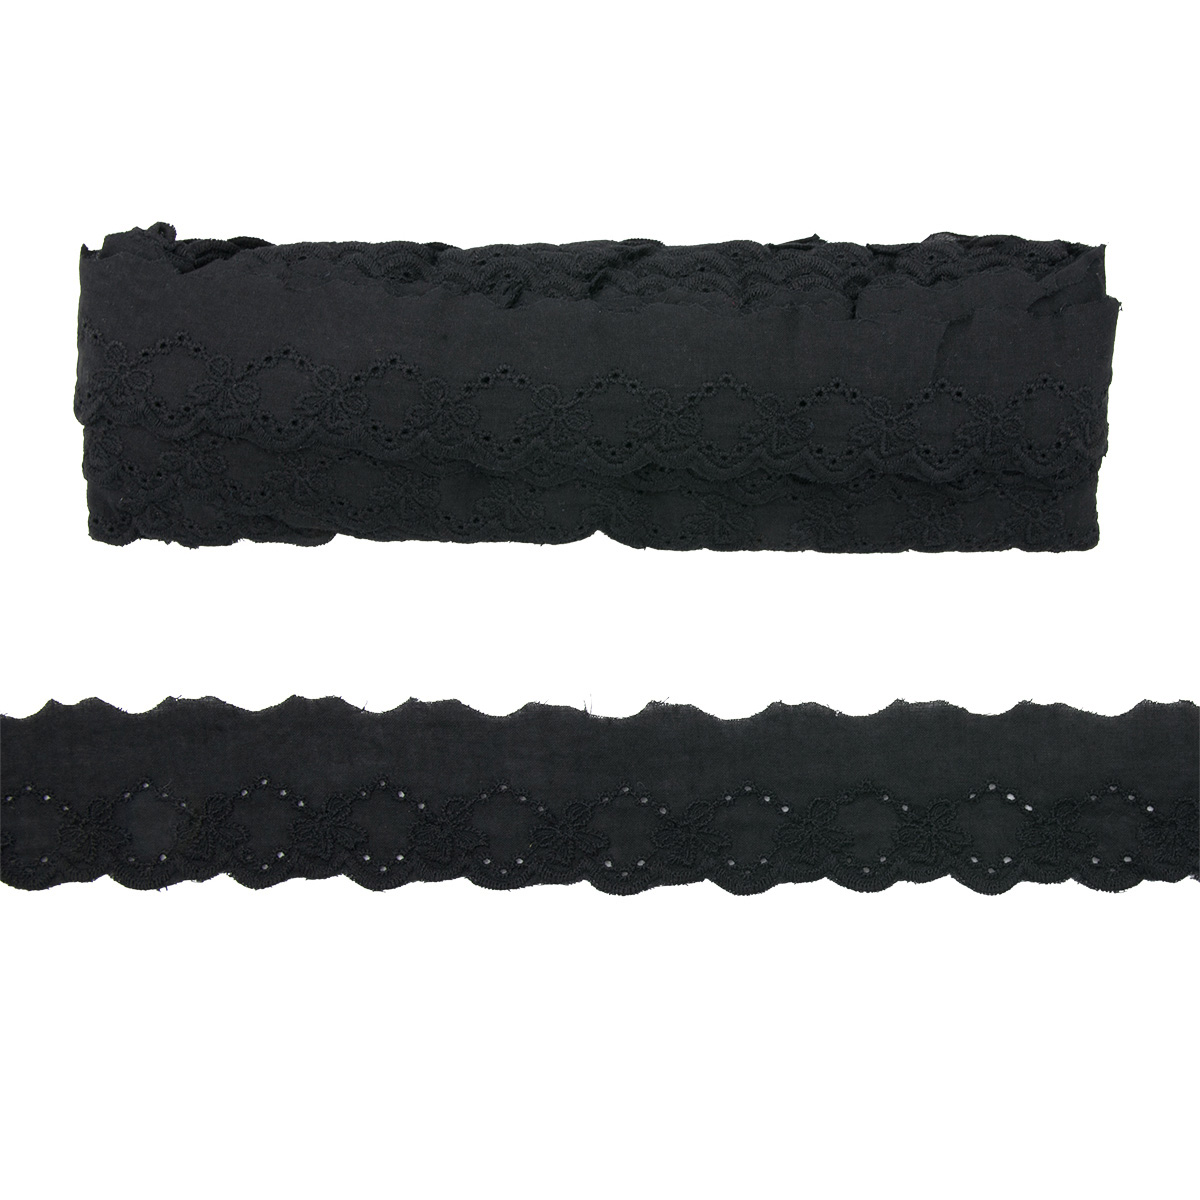 

Шитье АЙИРС, арт. 0573-1328, хб, 3,7 см*13,71 м (чёрный), Черный